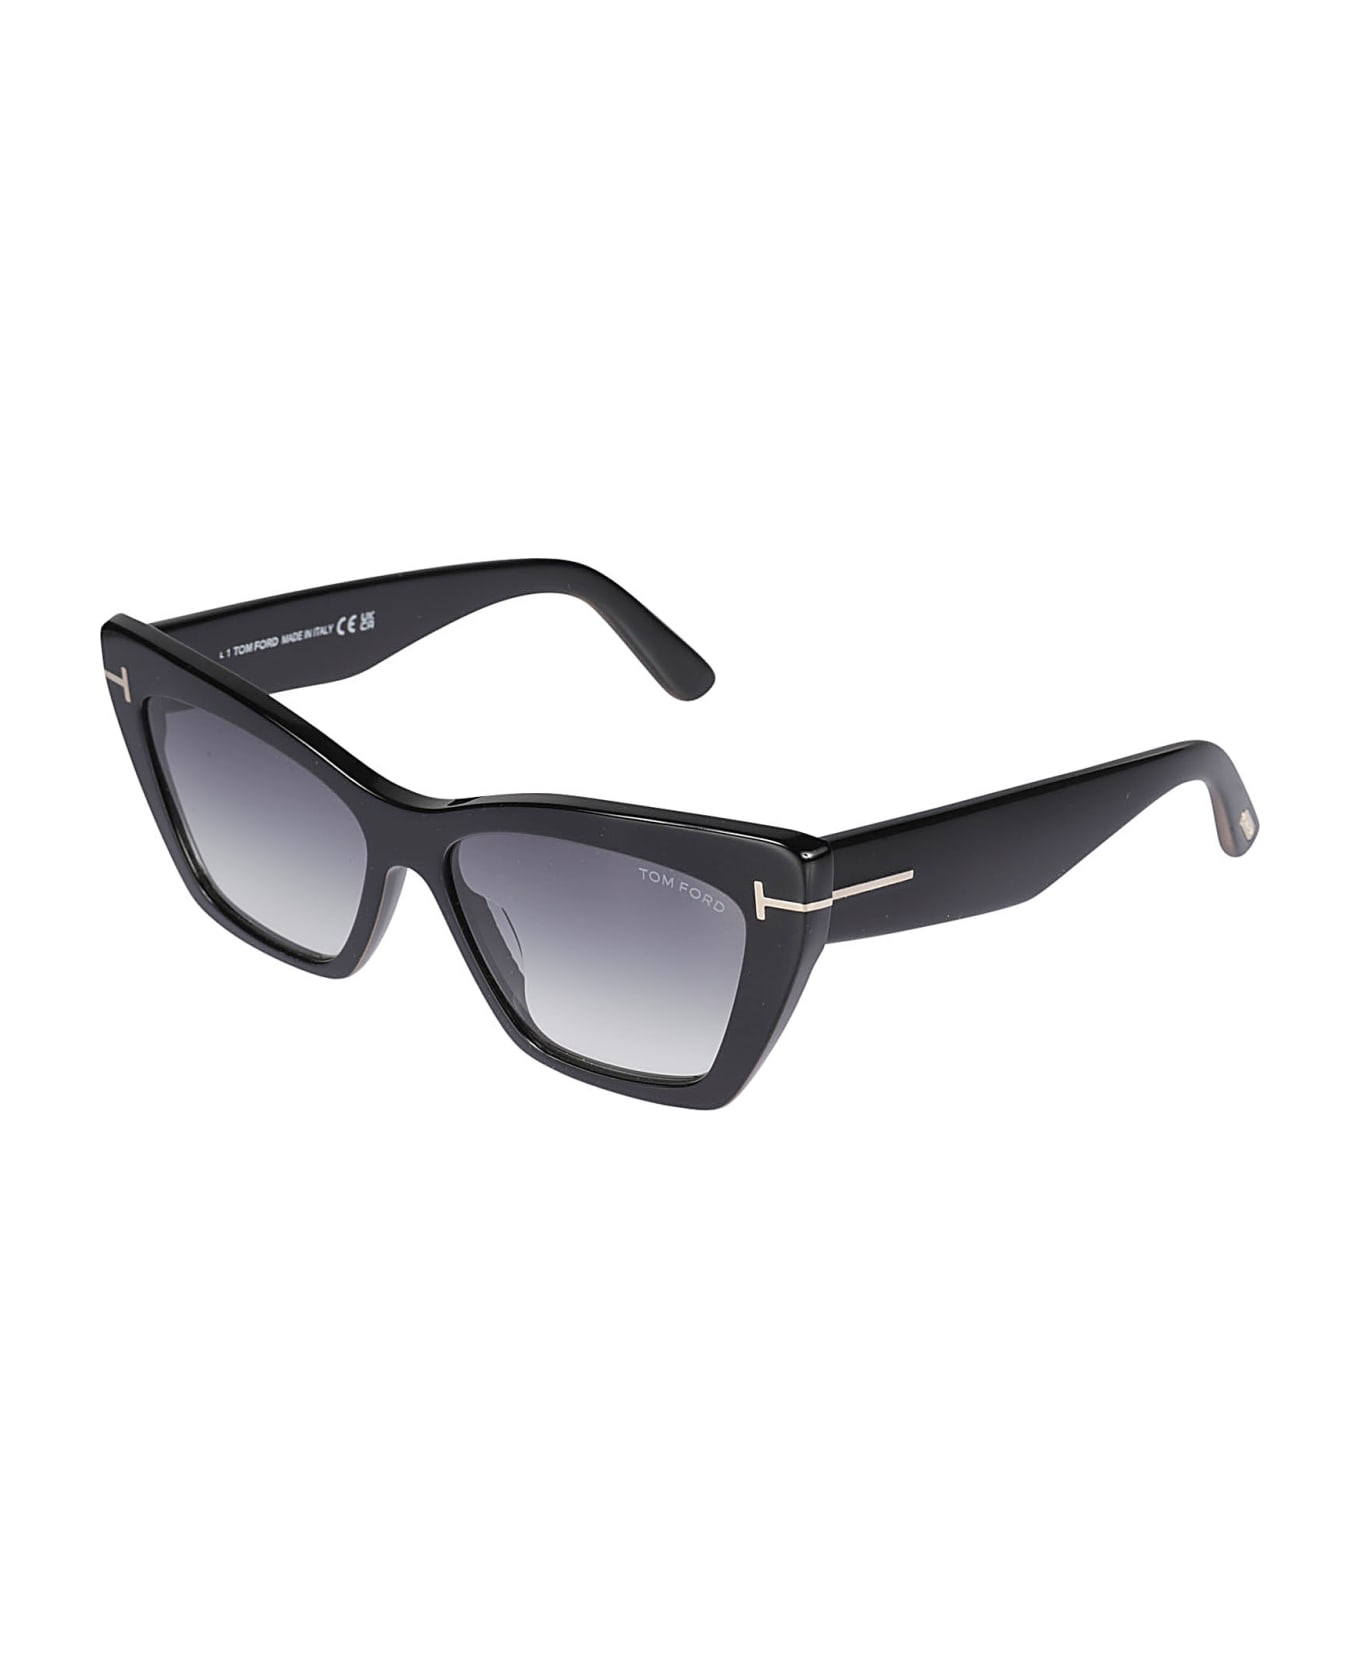 Tom Ford Eyewear Wyatt Sunglasses - 01B